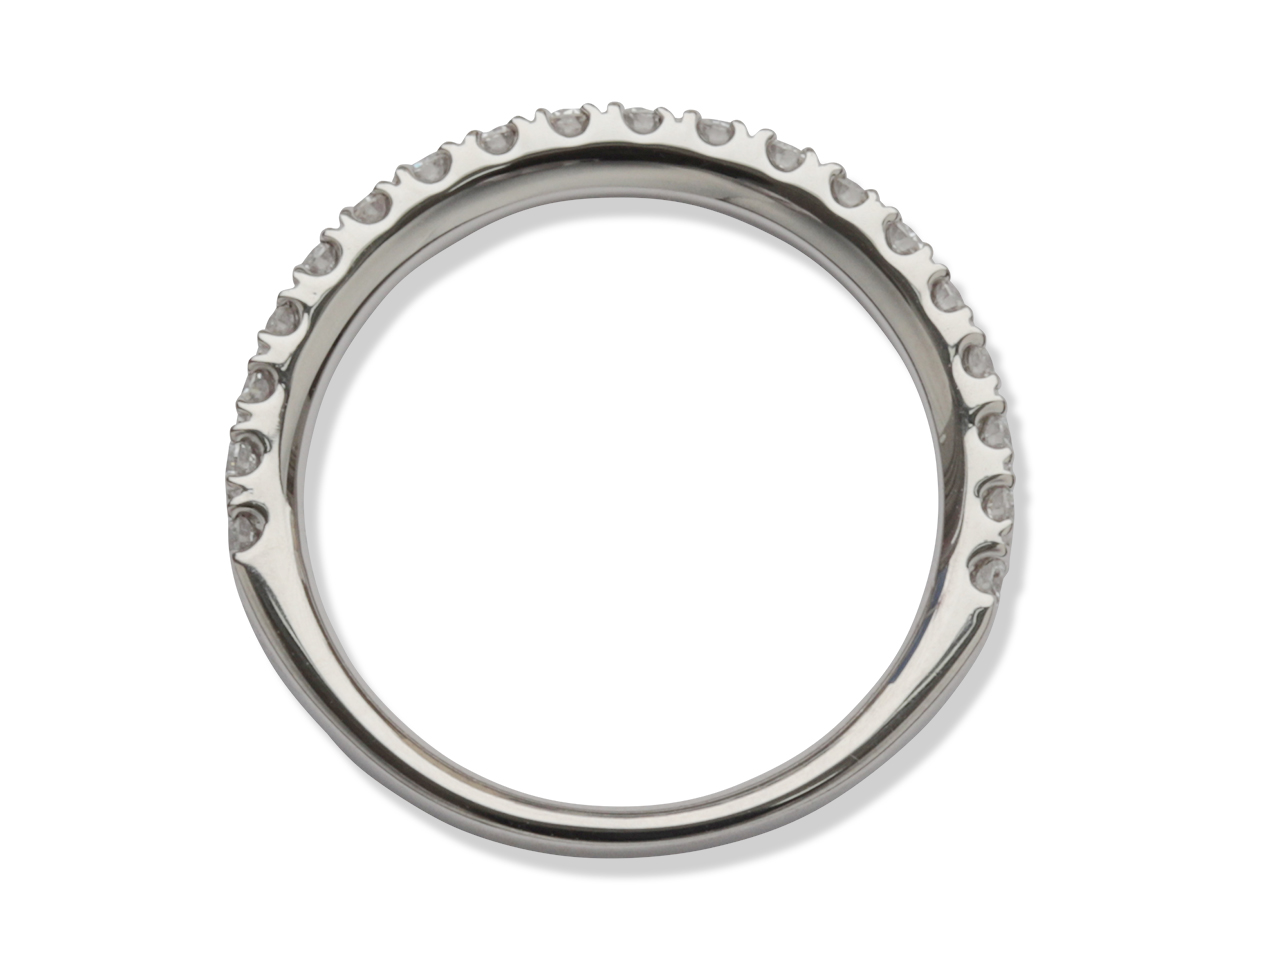 婚約指輪、結婚指輪とは別の結婚記念リングのオーダーメイド